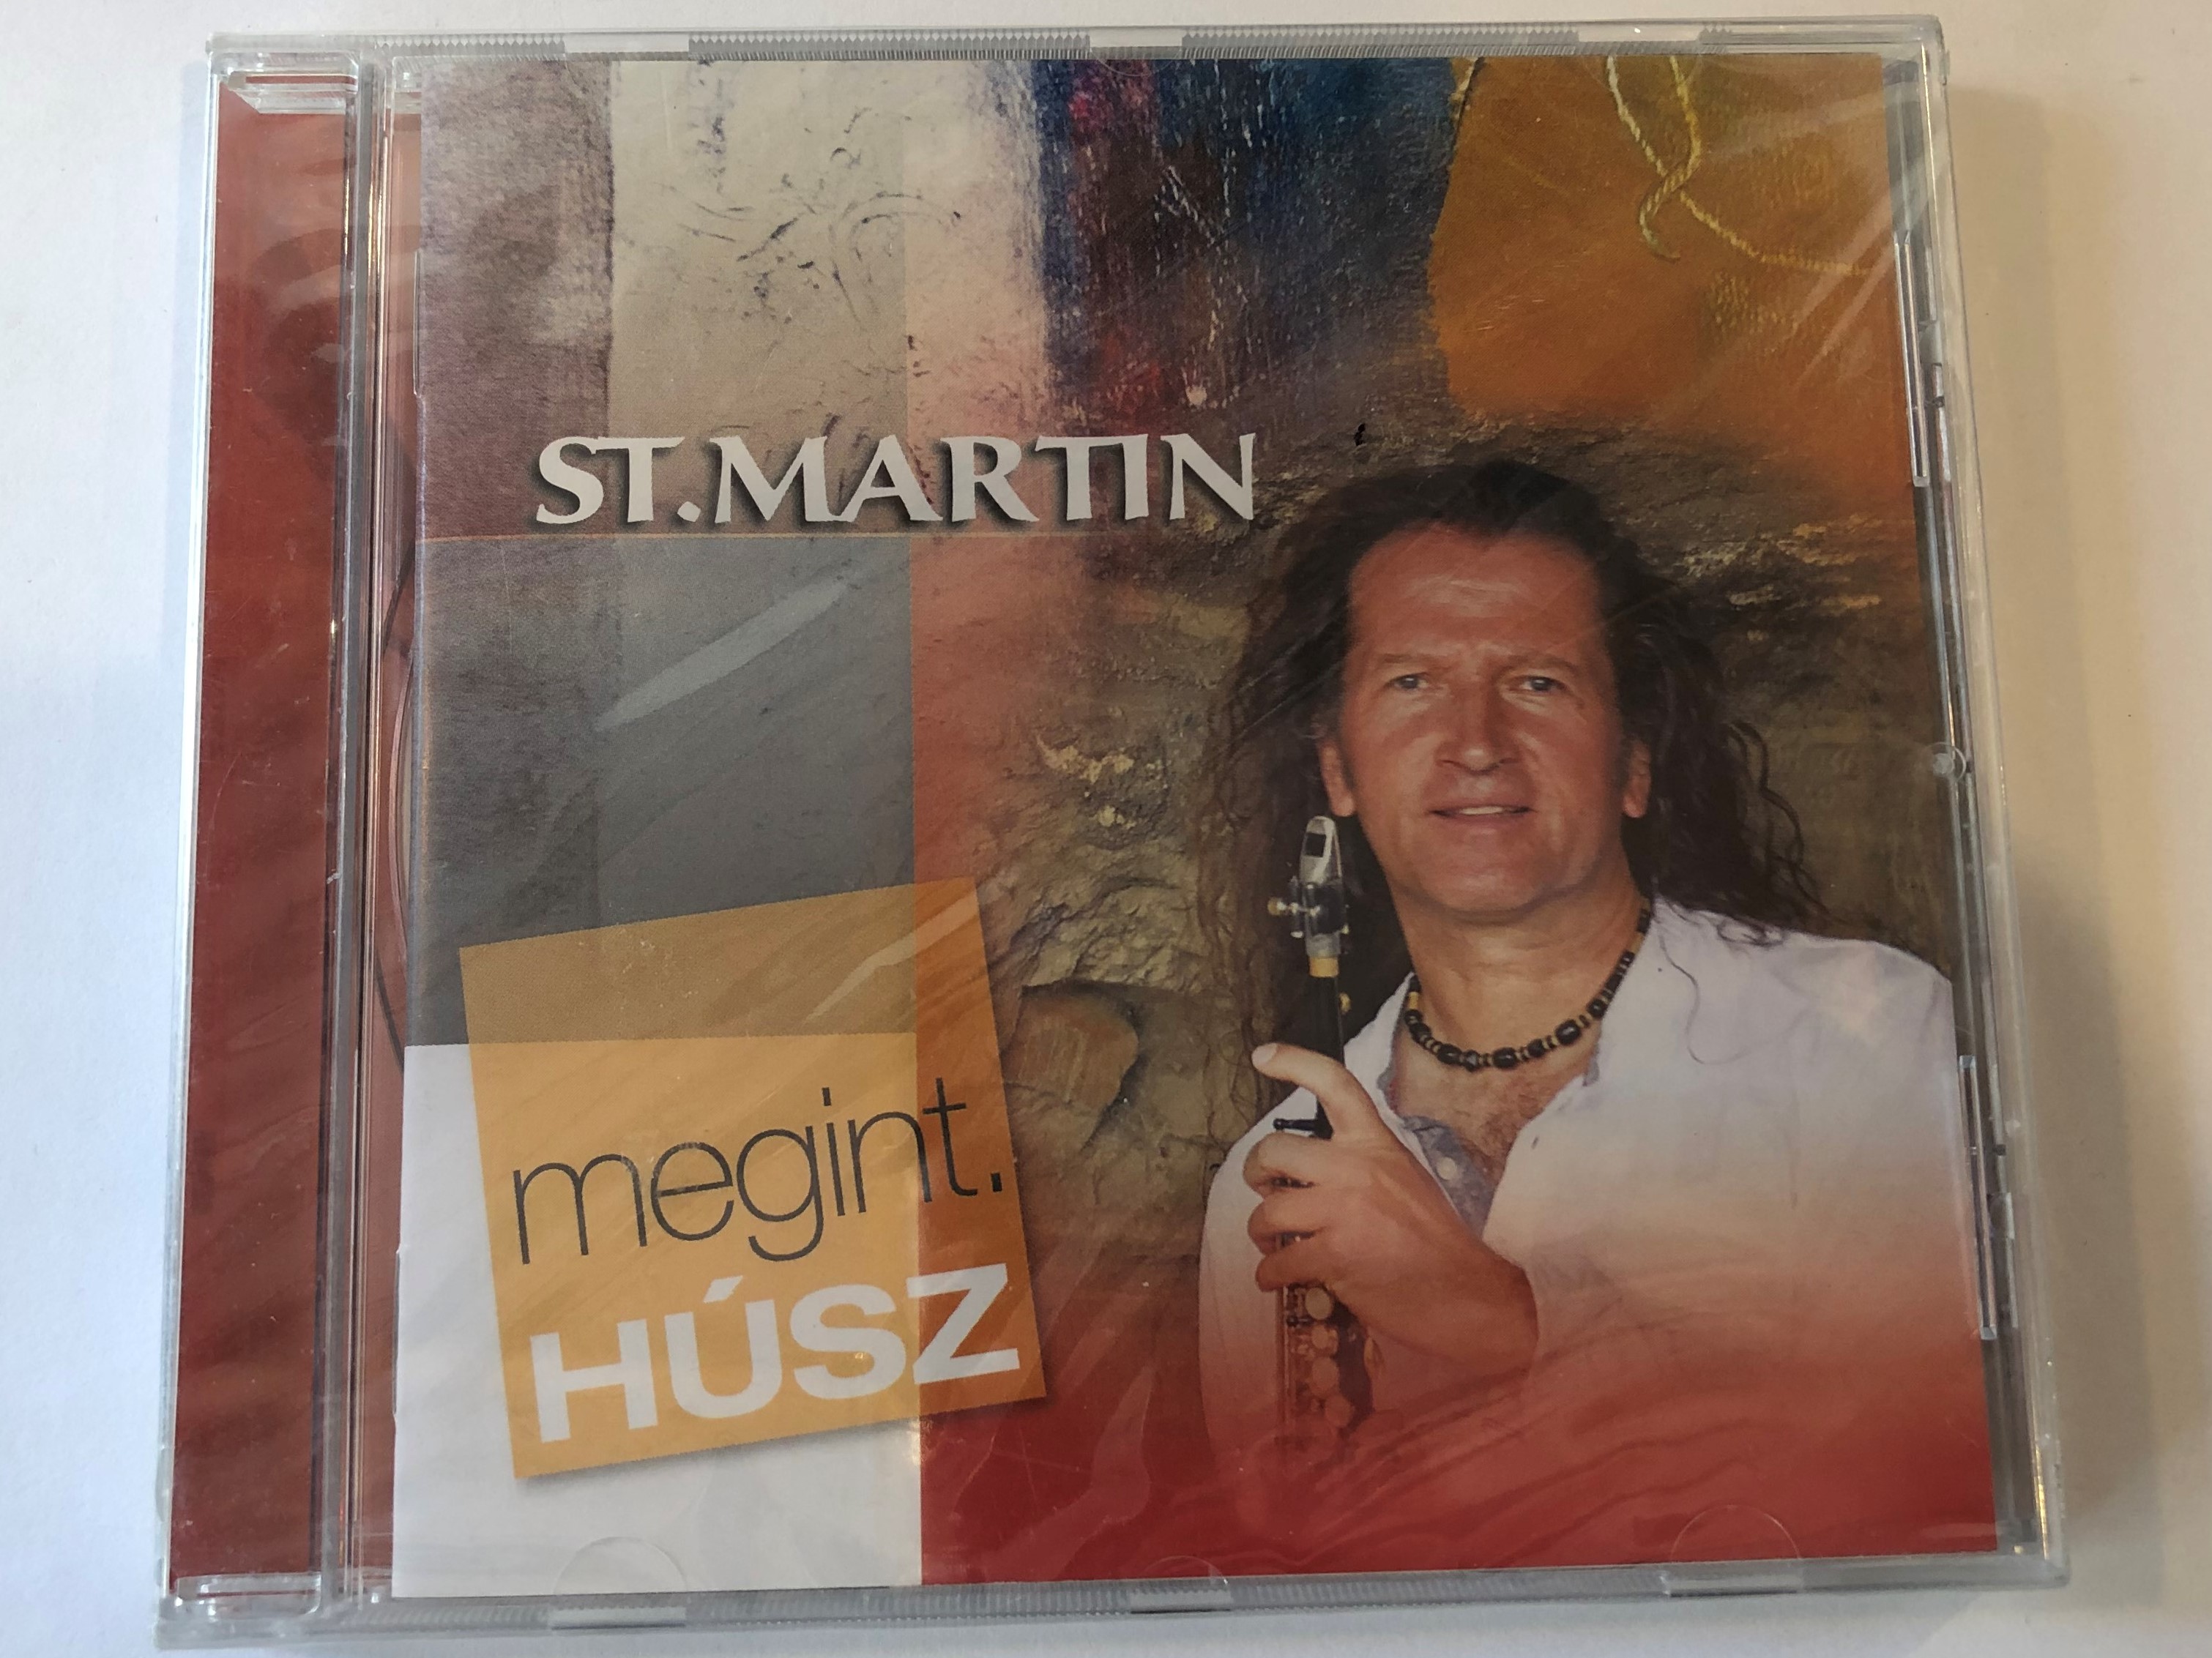 st.-martin-megint.-husz-tom-tom-records-audio-cd-2012-ttcd173-1-.jpg